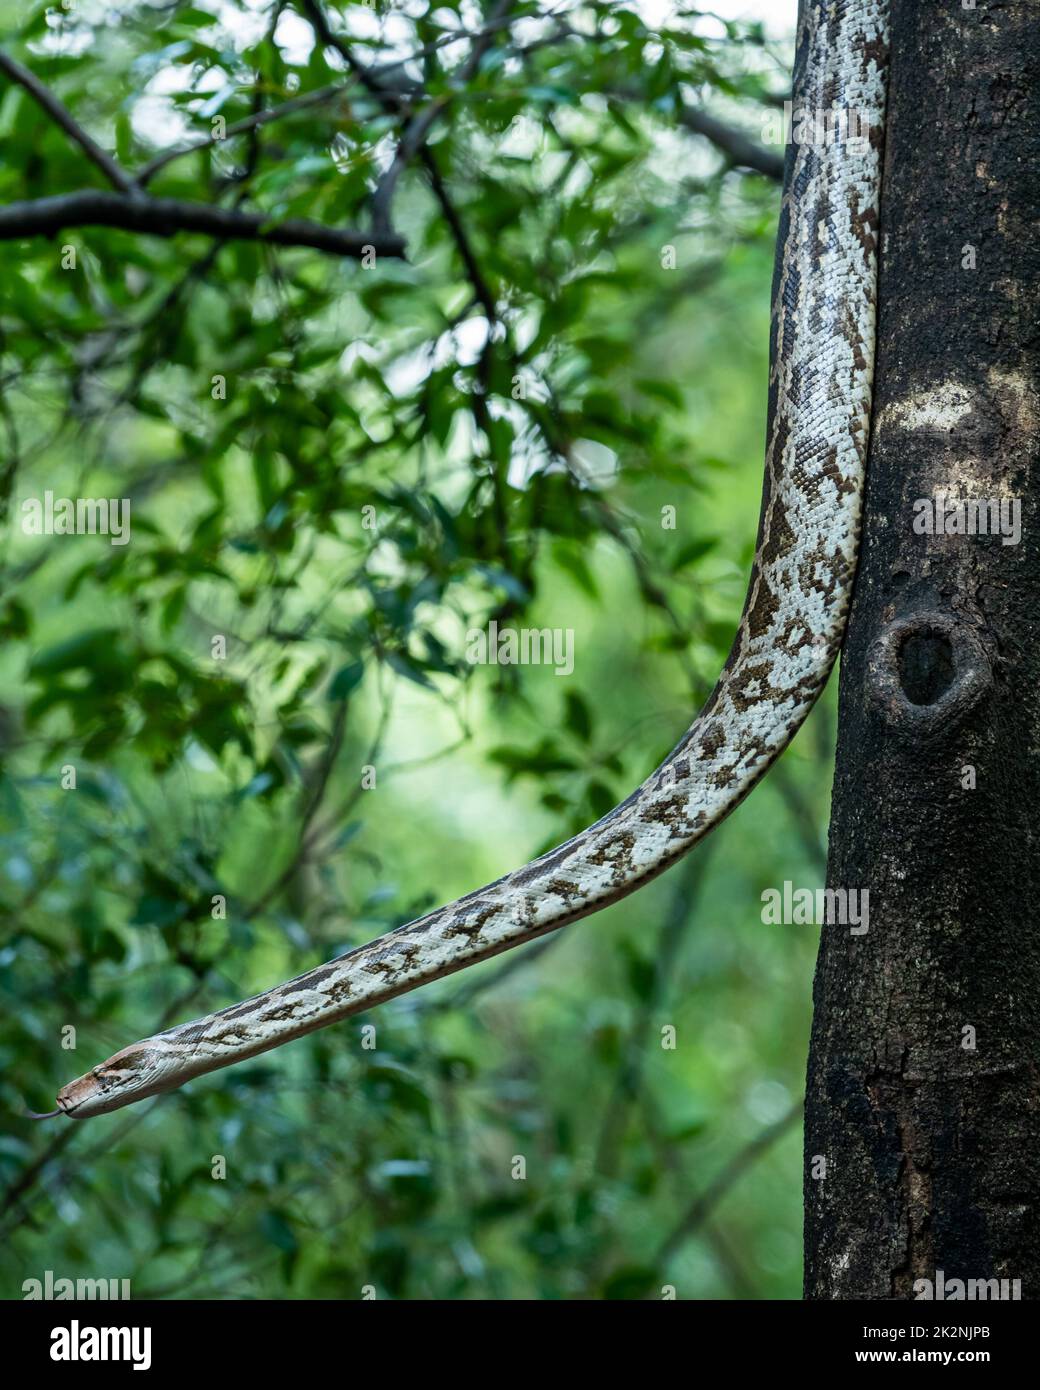 Python molurus o python di roccia indiana appeso su albero in fondo naturale monsone verde al parco nazionale di ranthambore rajasthan india asia Foto Stock